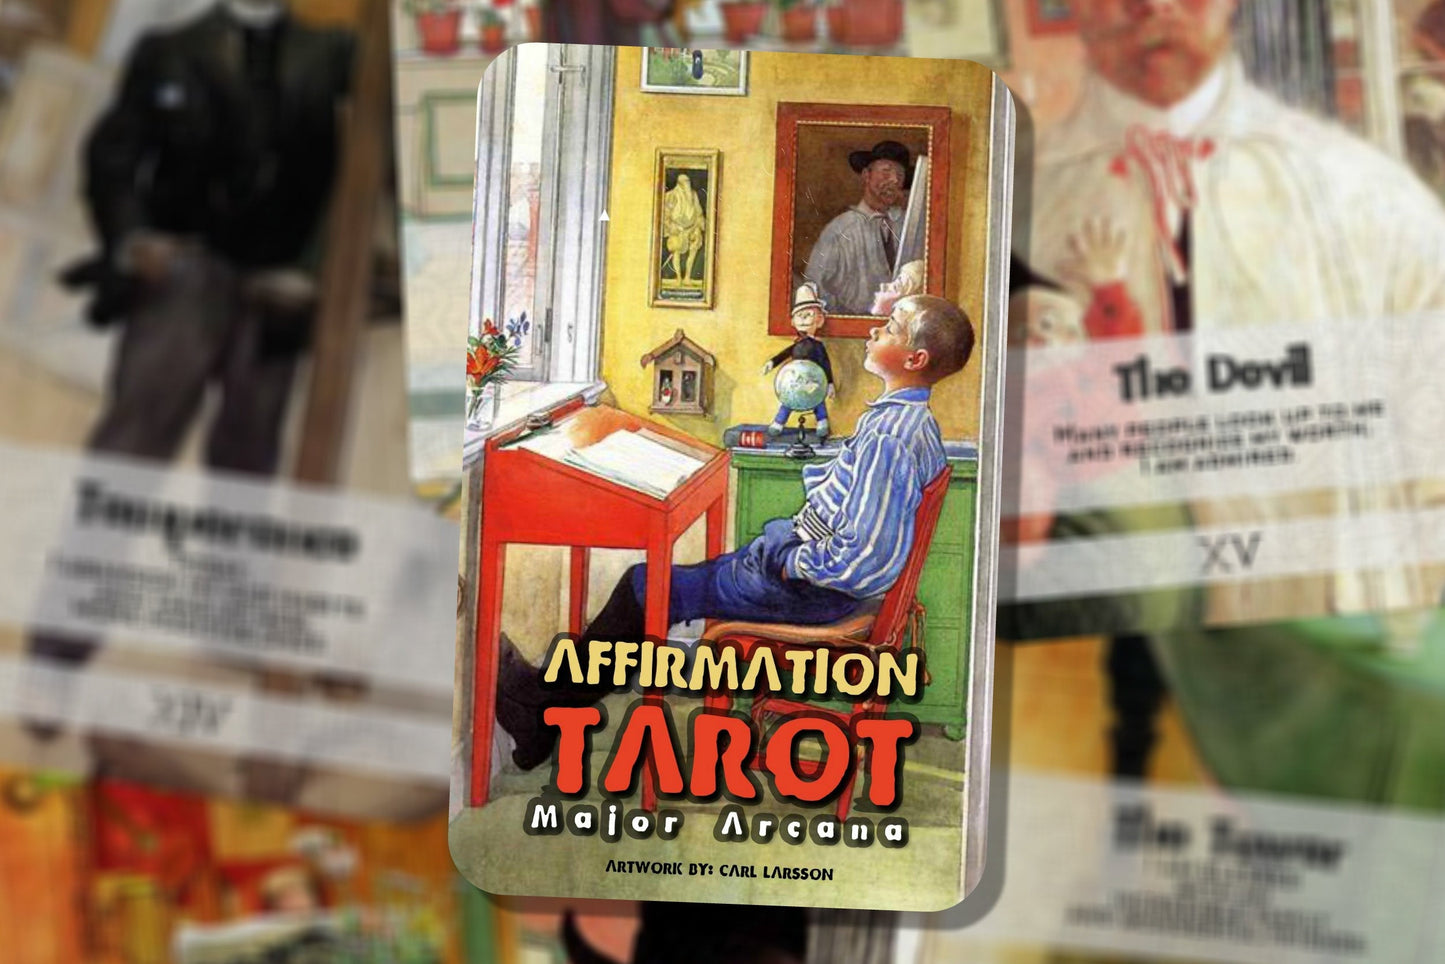 Affirmation Tarot  - Major Arcana - Carl Larsson